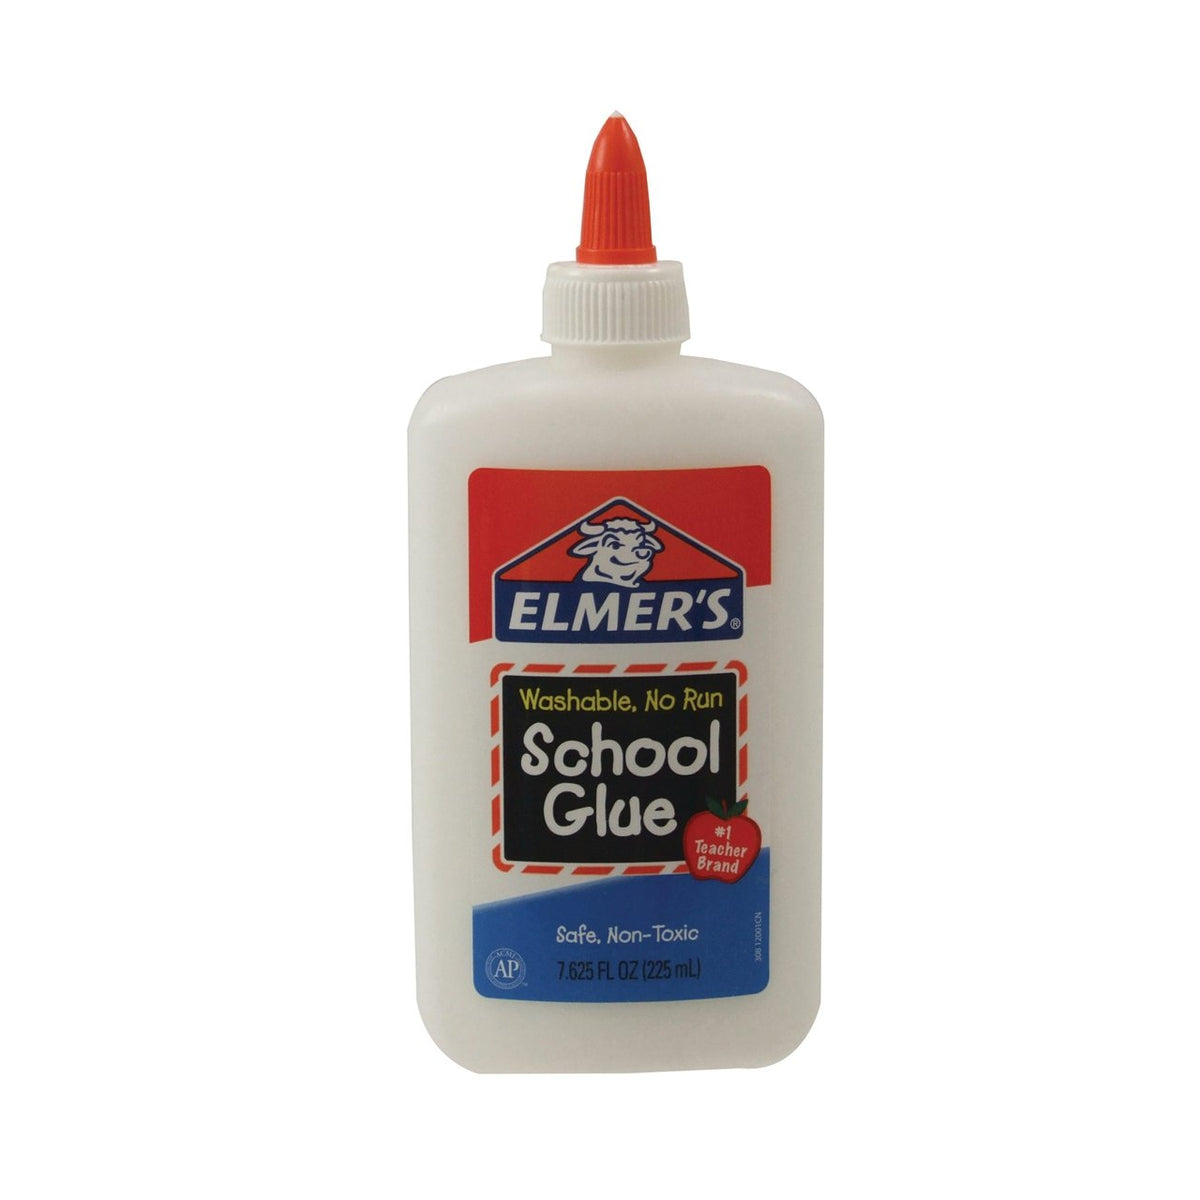 Elmers Glue, Clear, Washable - 5 fl oz